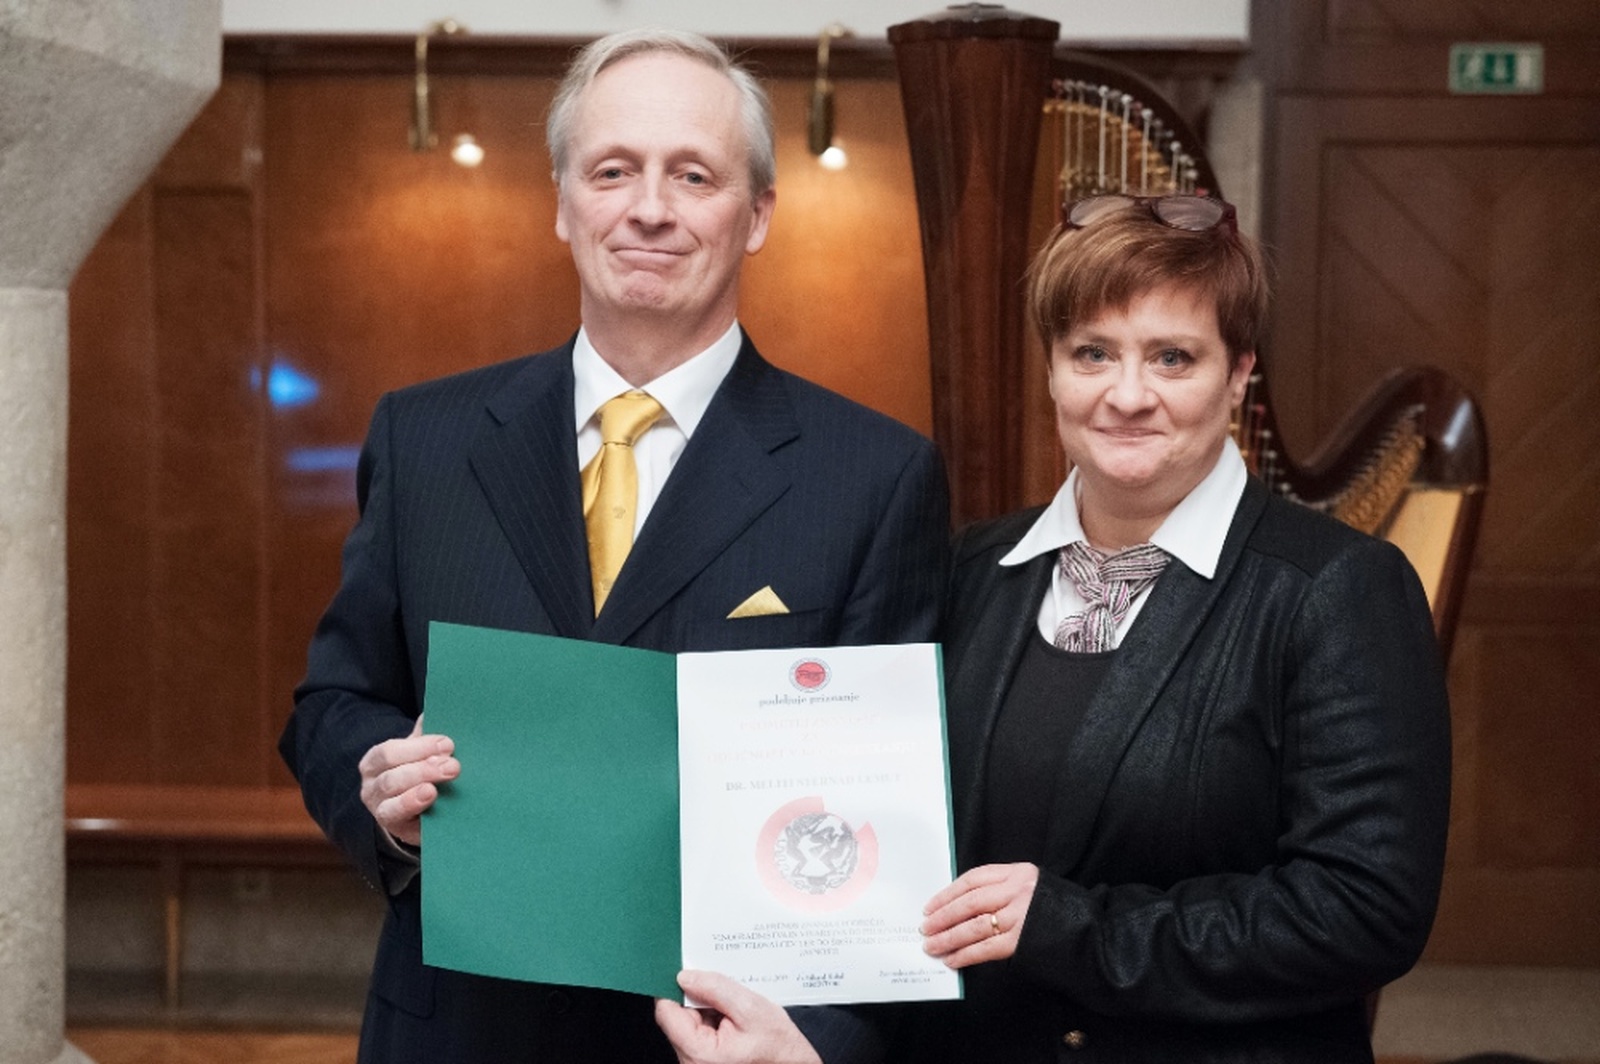 Priznanje “Prometej znanosti za odličnost v komuniciranju v letu 2014” je prejela sodelavka Univerze v Novi Gorici